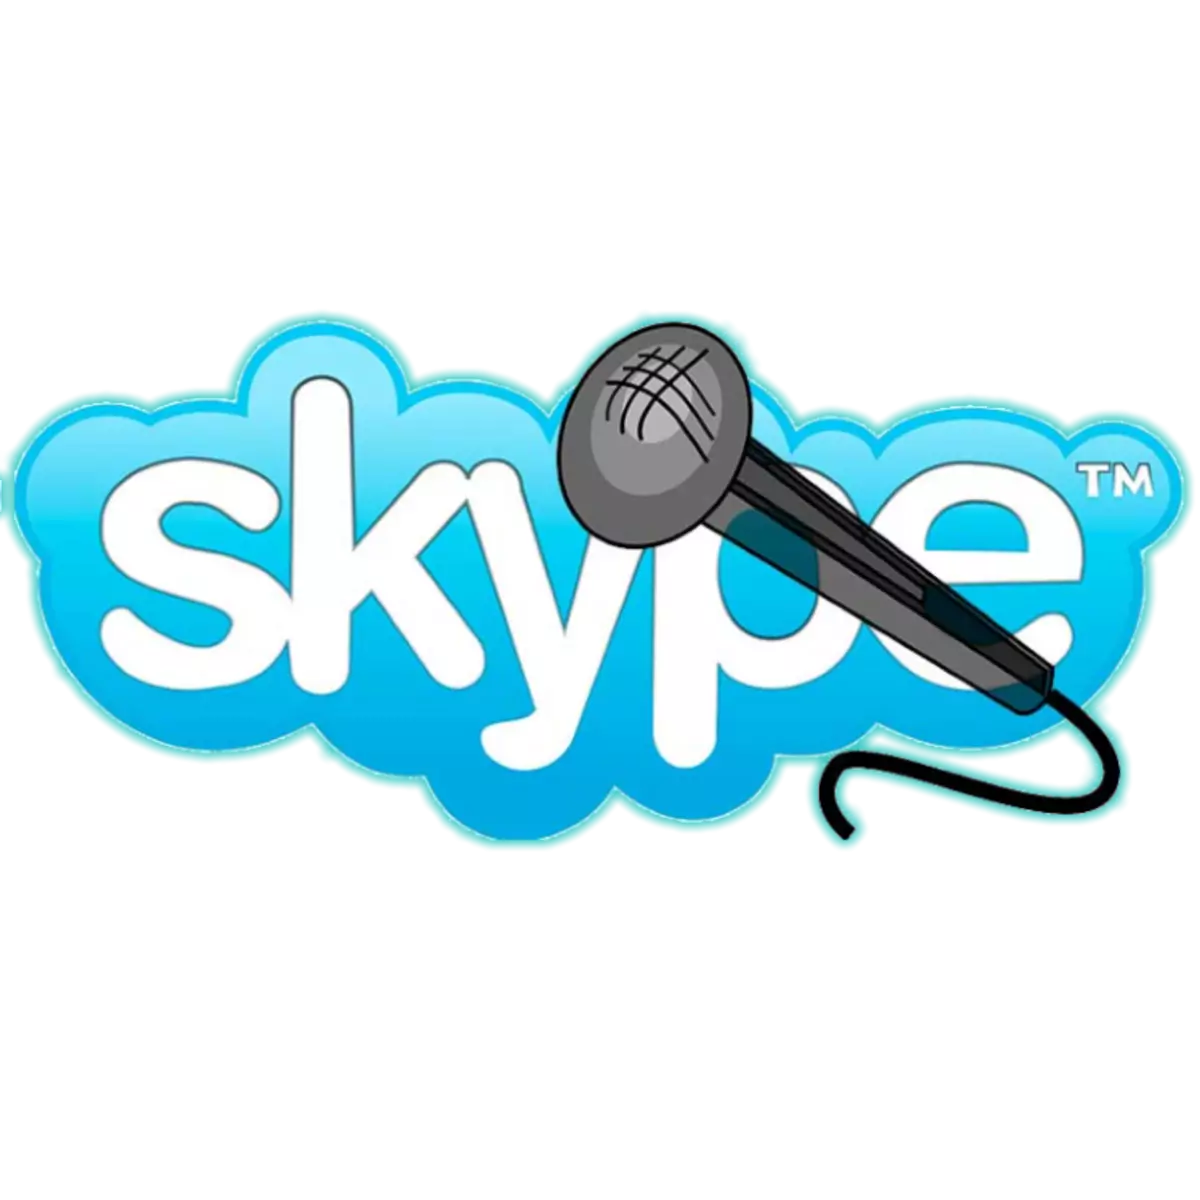 Kial la mikrofono ne funkcias en Skype